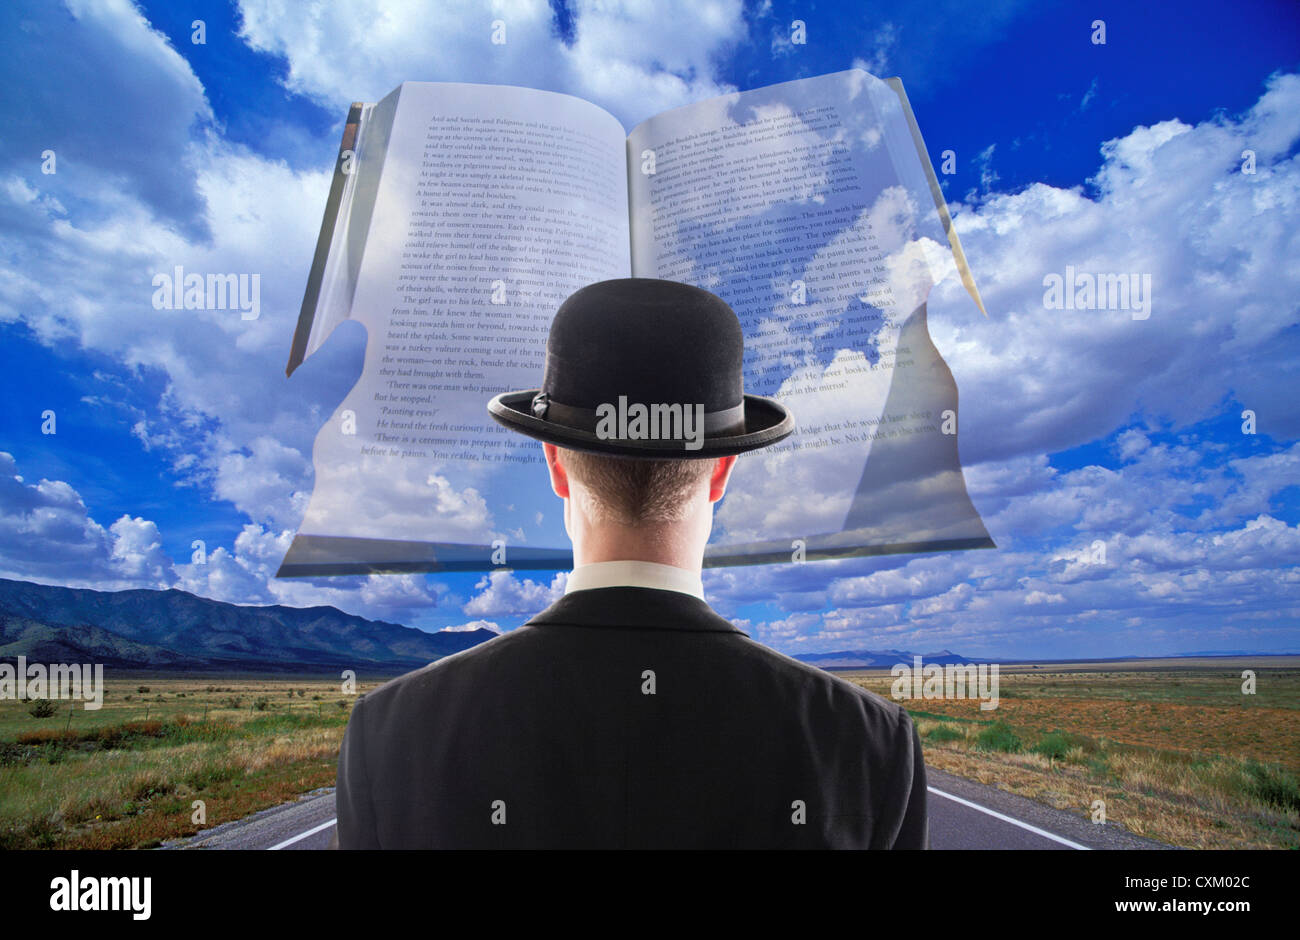 Magritte homme en face de livre dans les nuages au-dessus d'une route désertique aride Banque D'Images